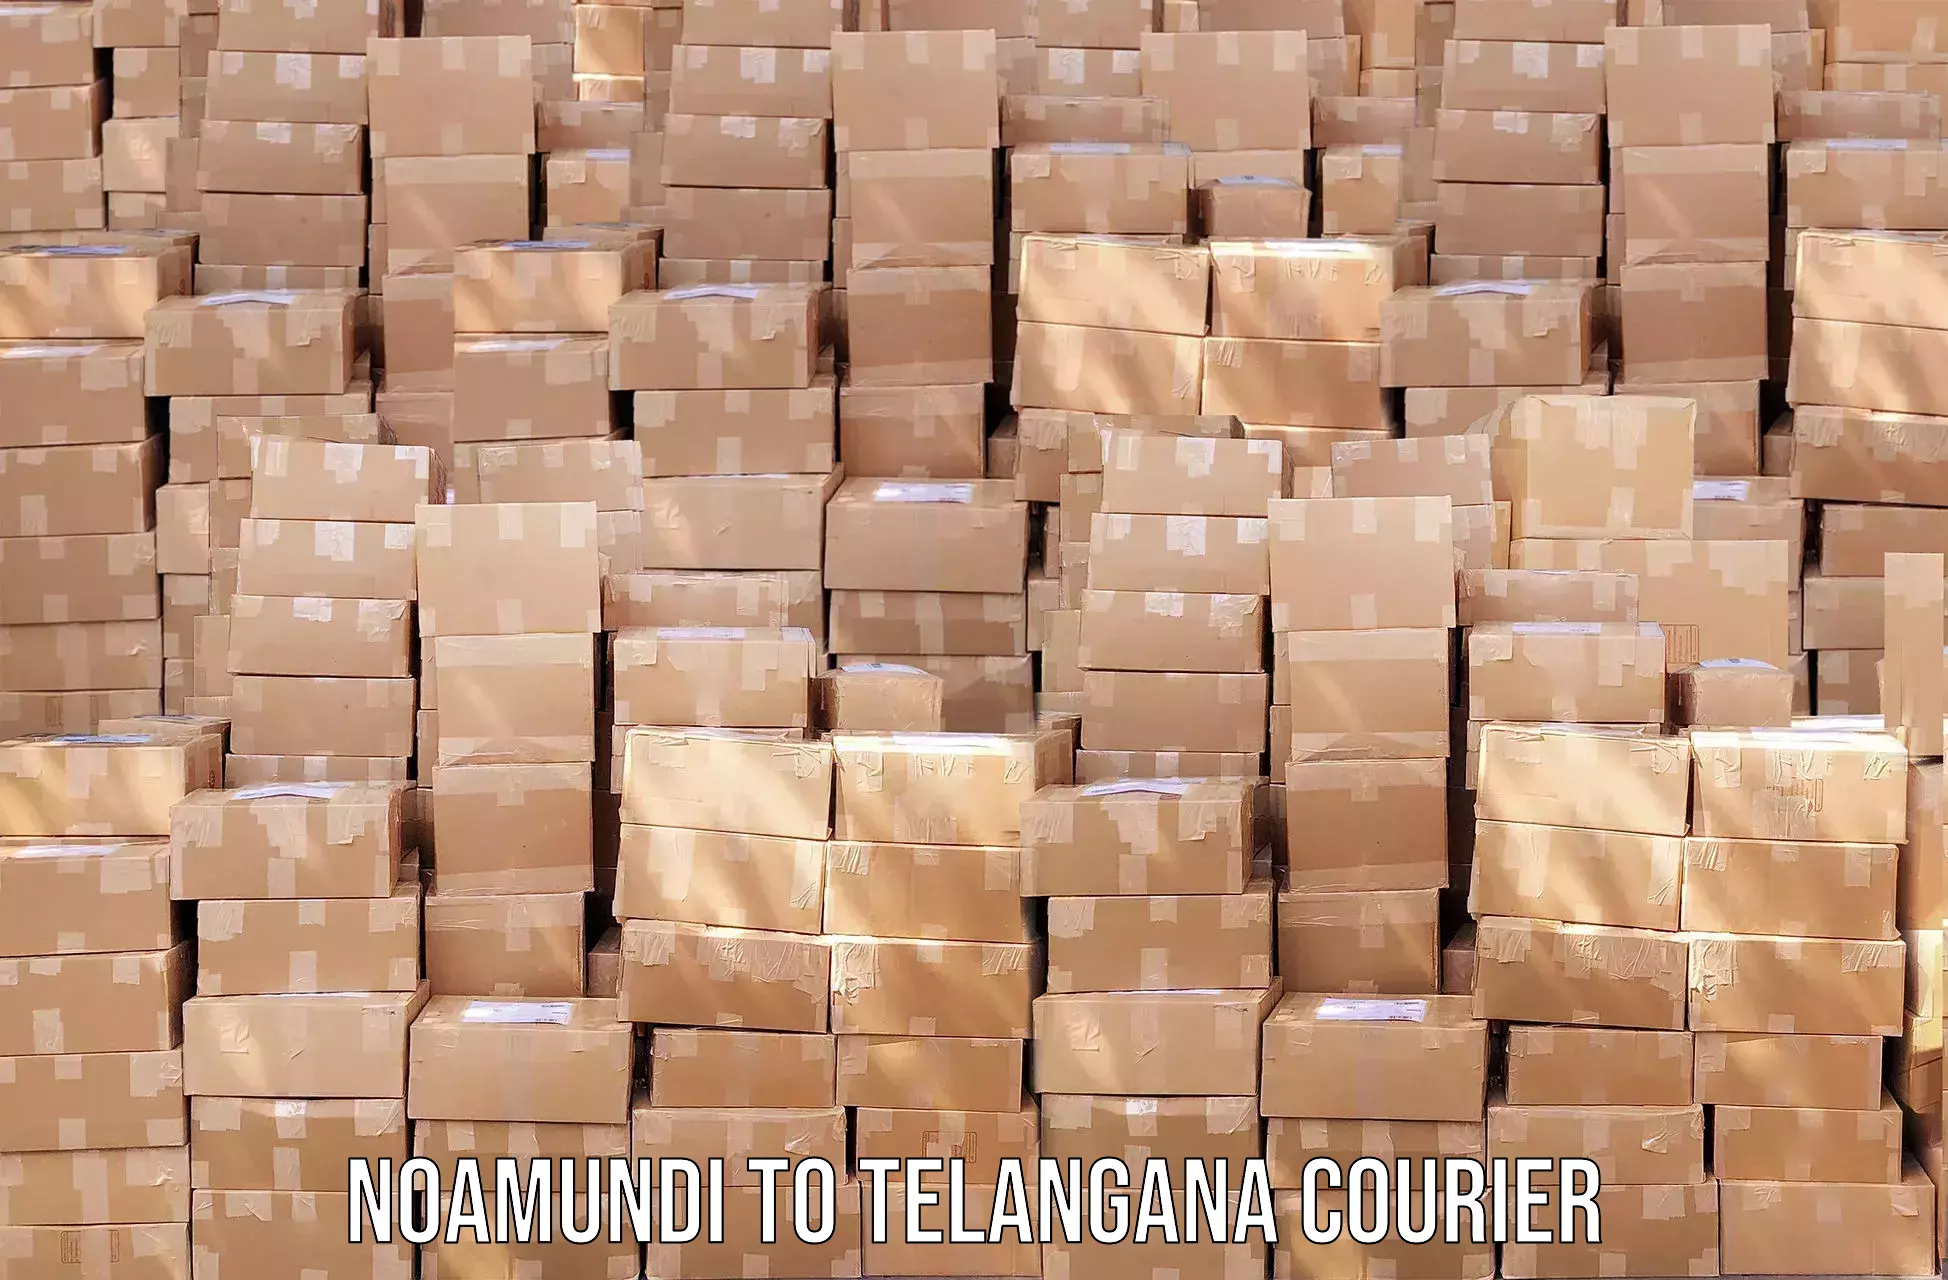 Subscription-based courier Noamundi to Ibrahimpatnam